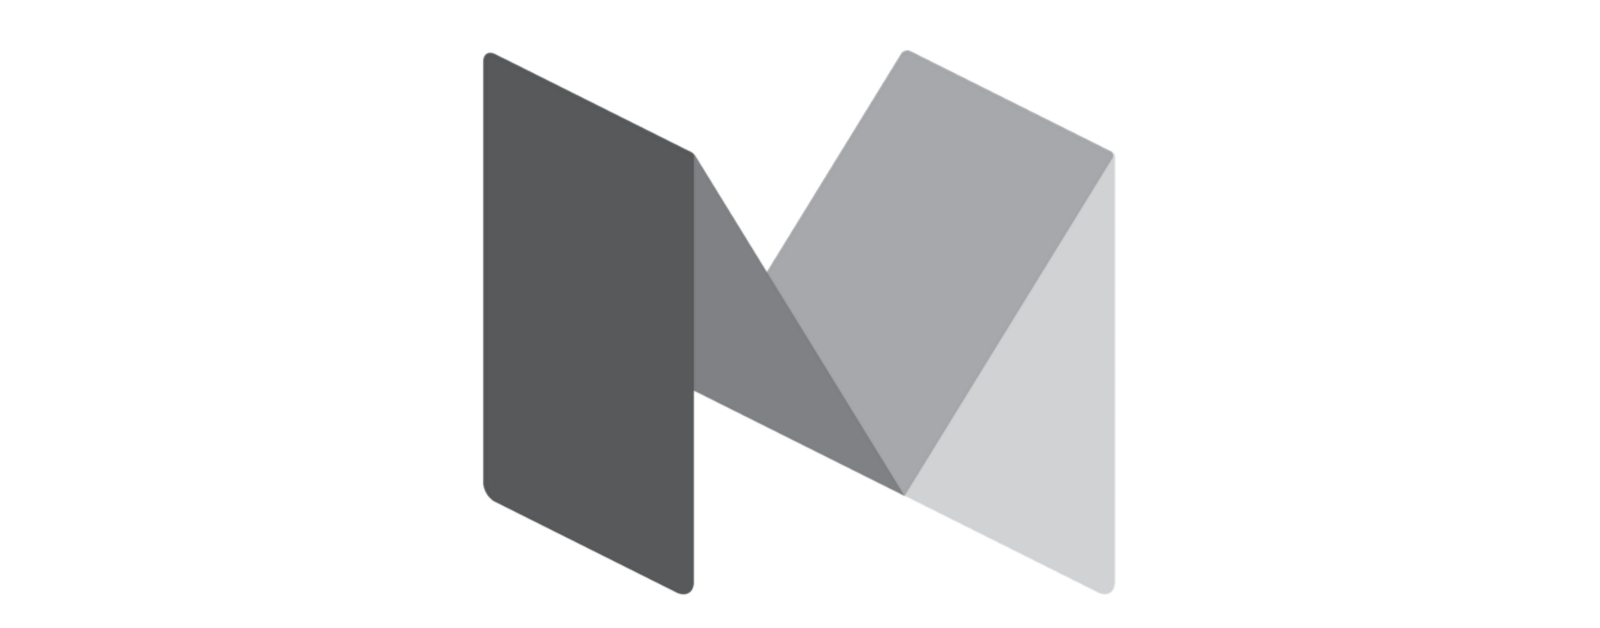 Medium Logo - Is the new Medium logo better?